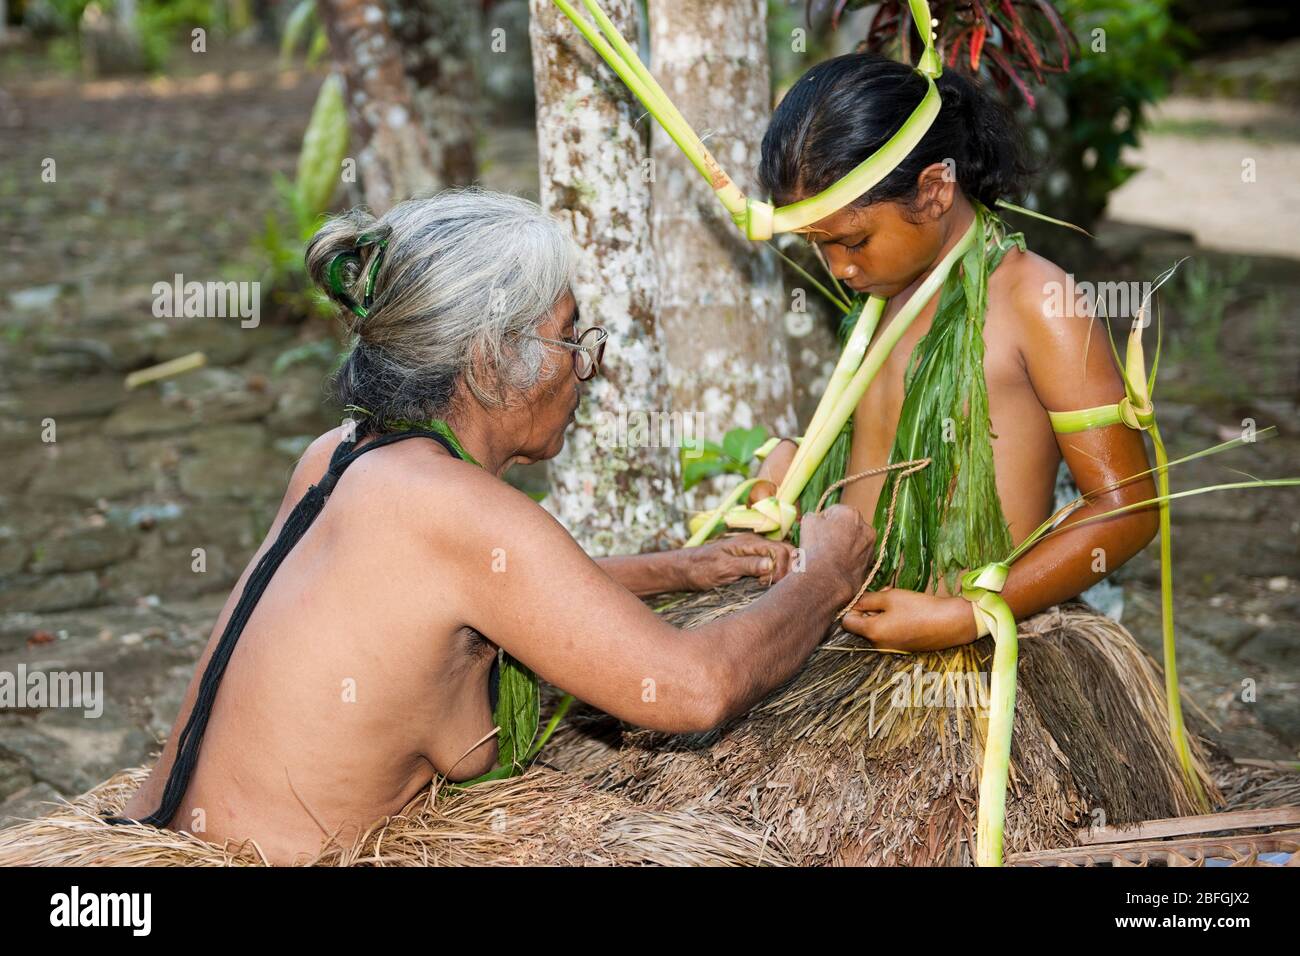 Eingeborene von Yap in traditioneller Kleidung, Yap, Mikronesien, Südsee Foto Stock